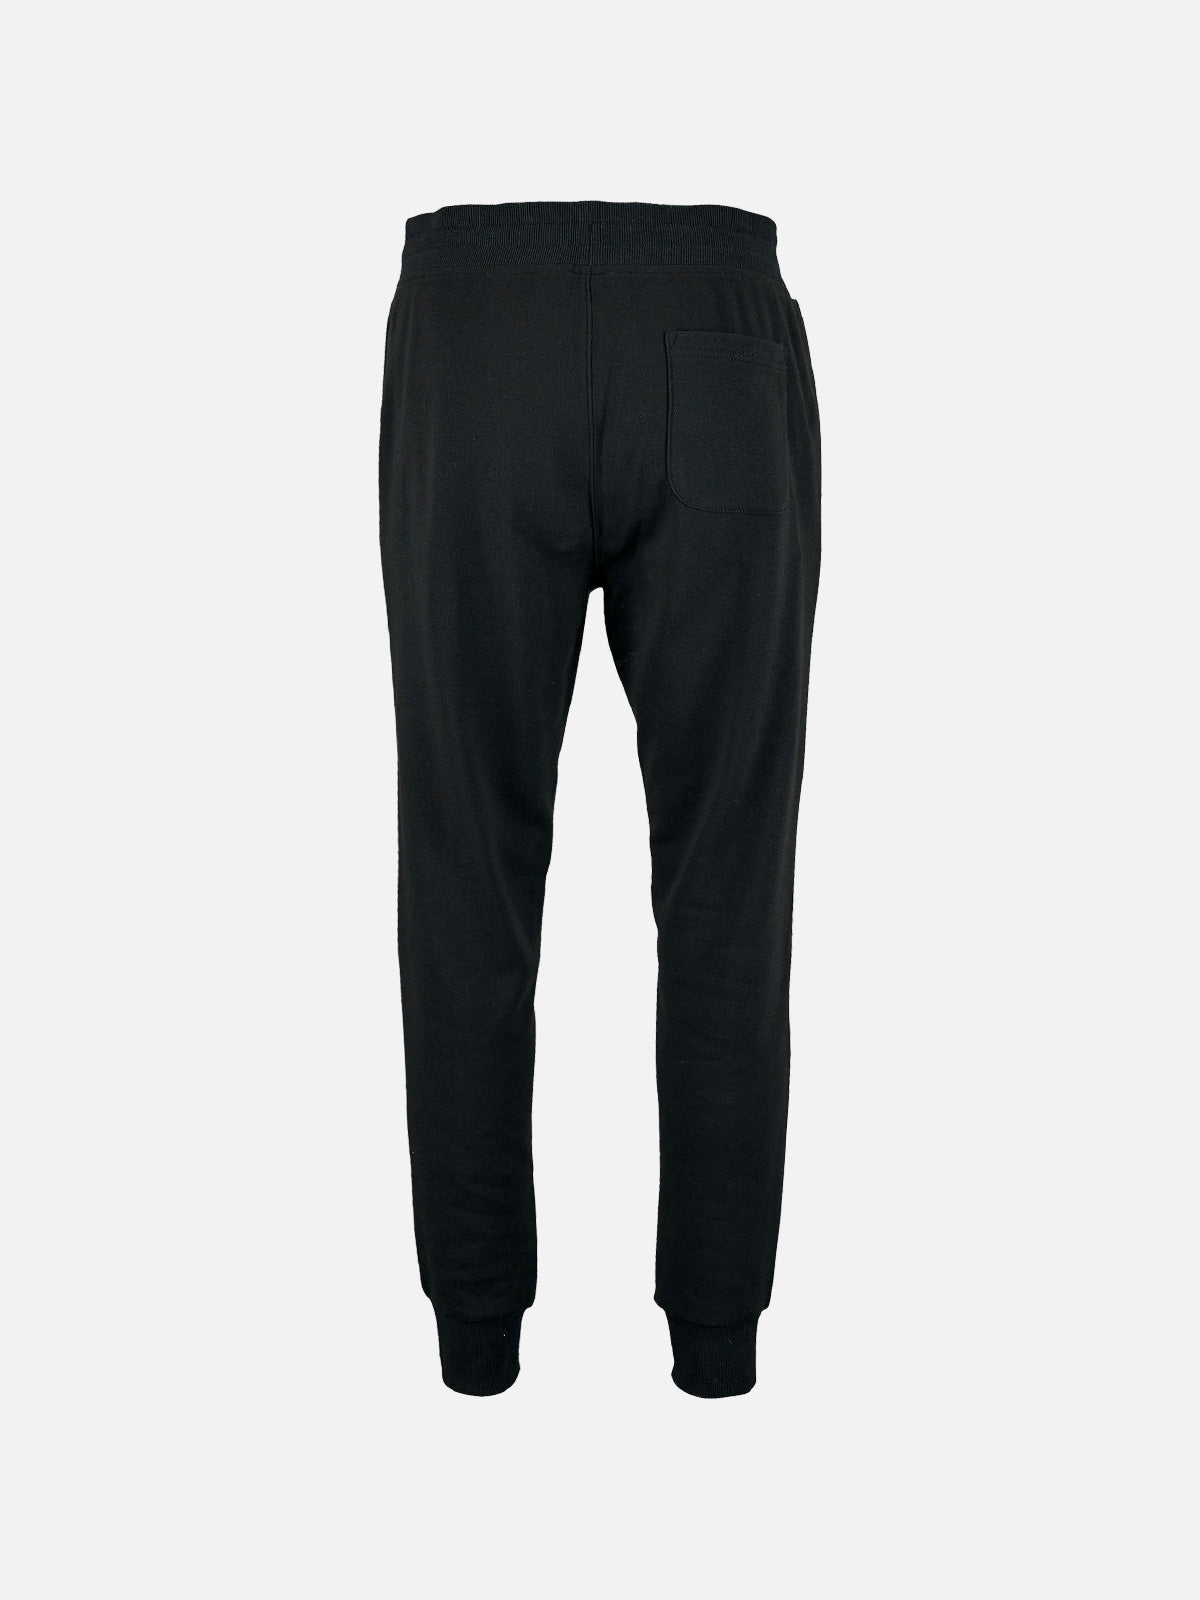 Pantalone Iconic Uomo - Black